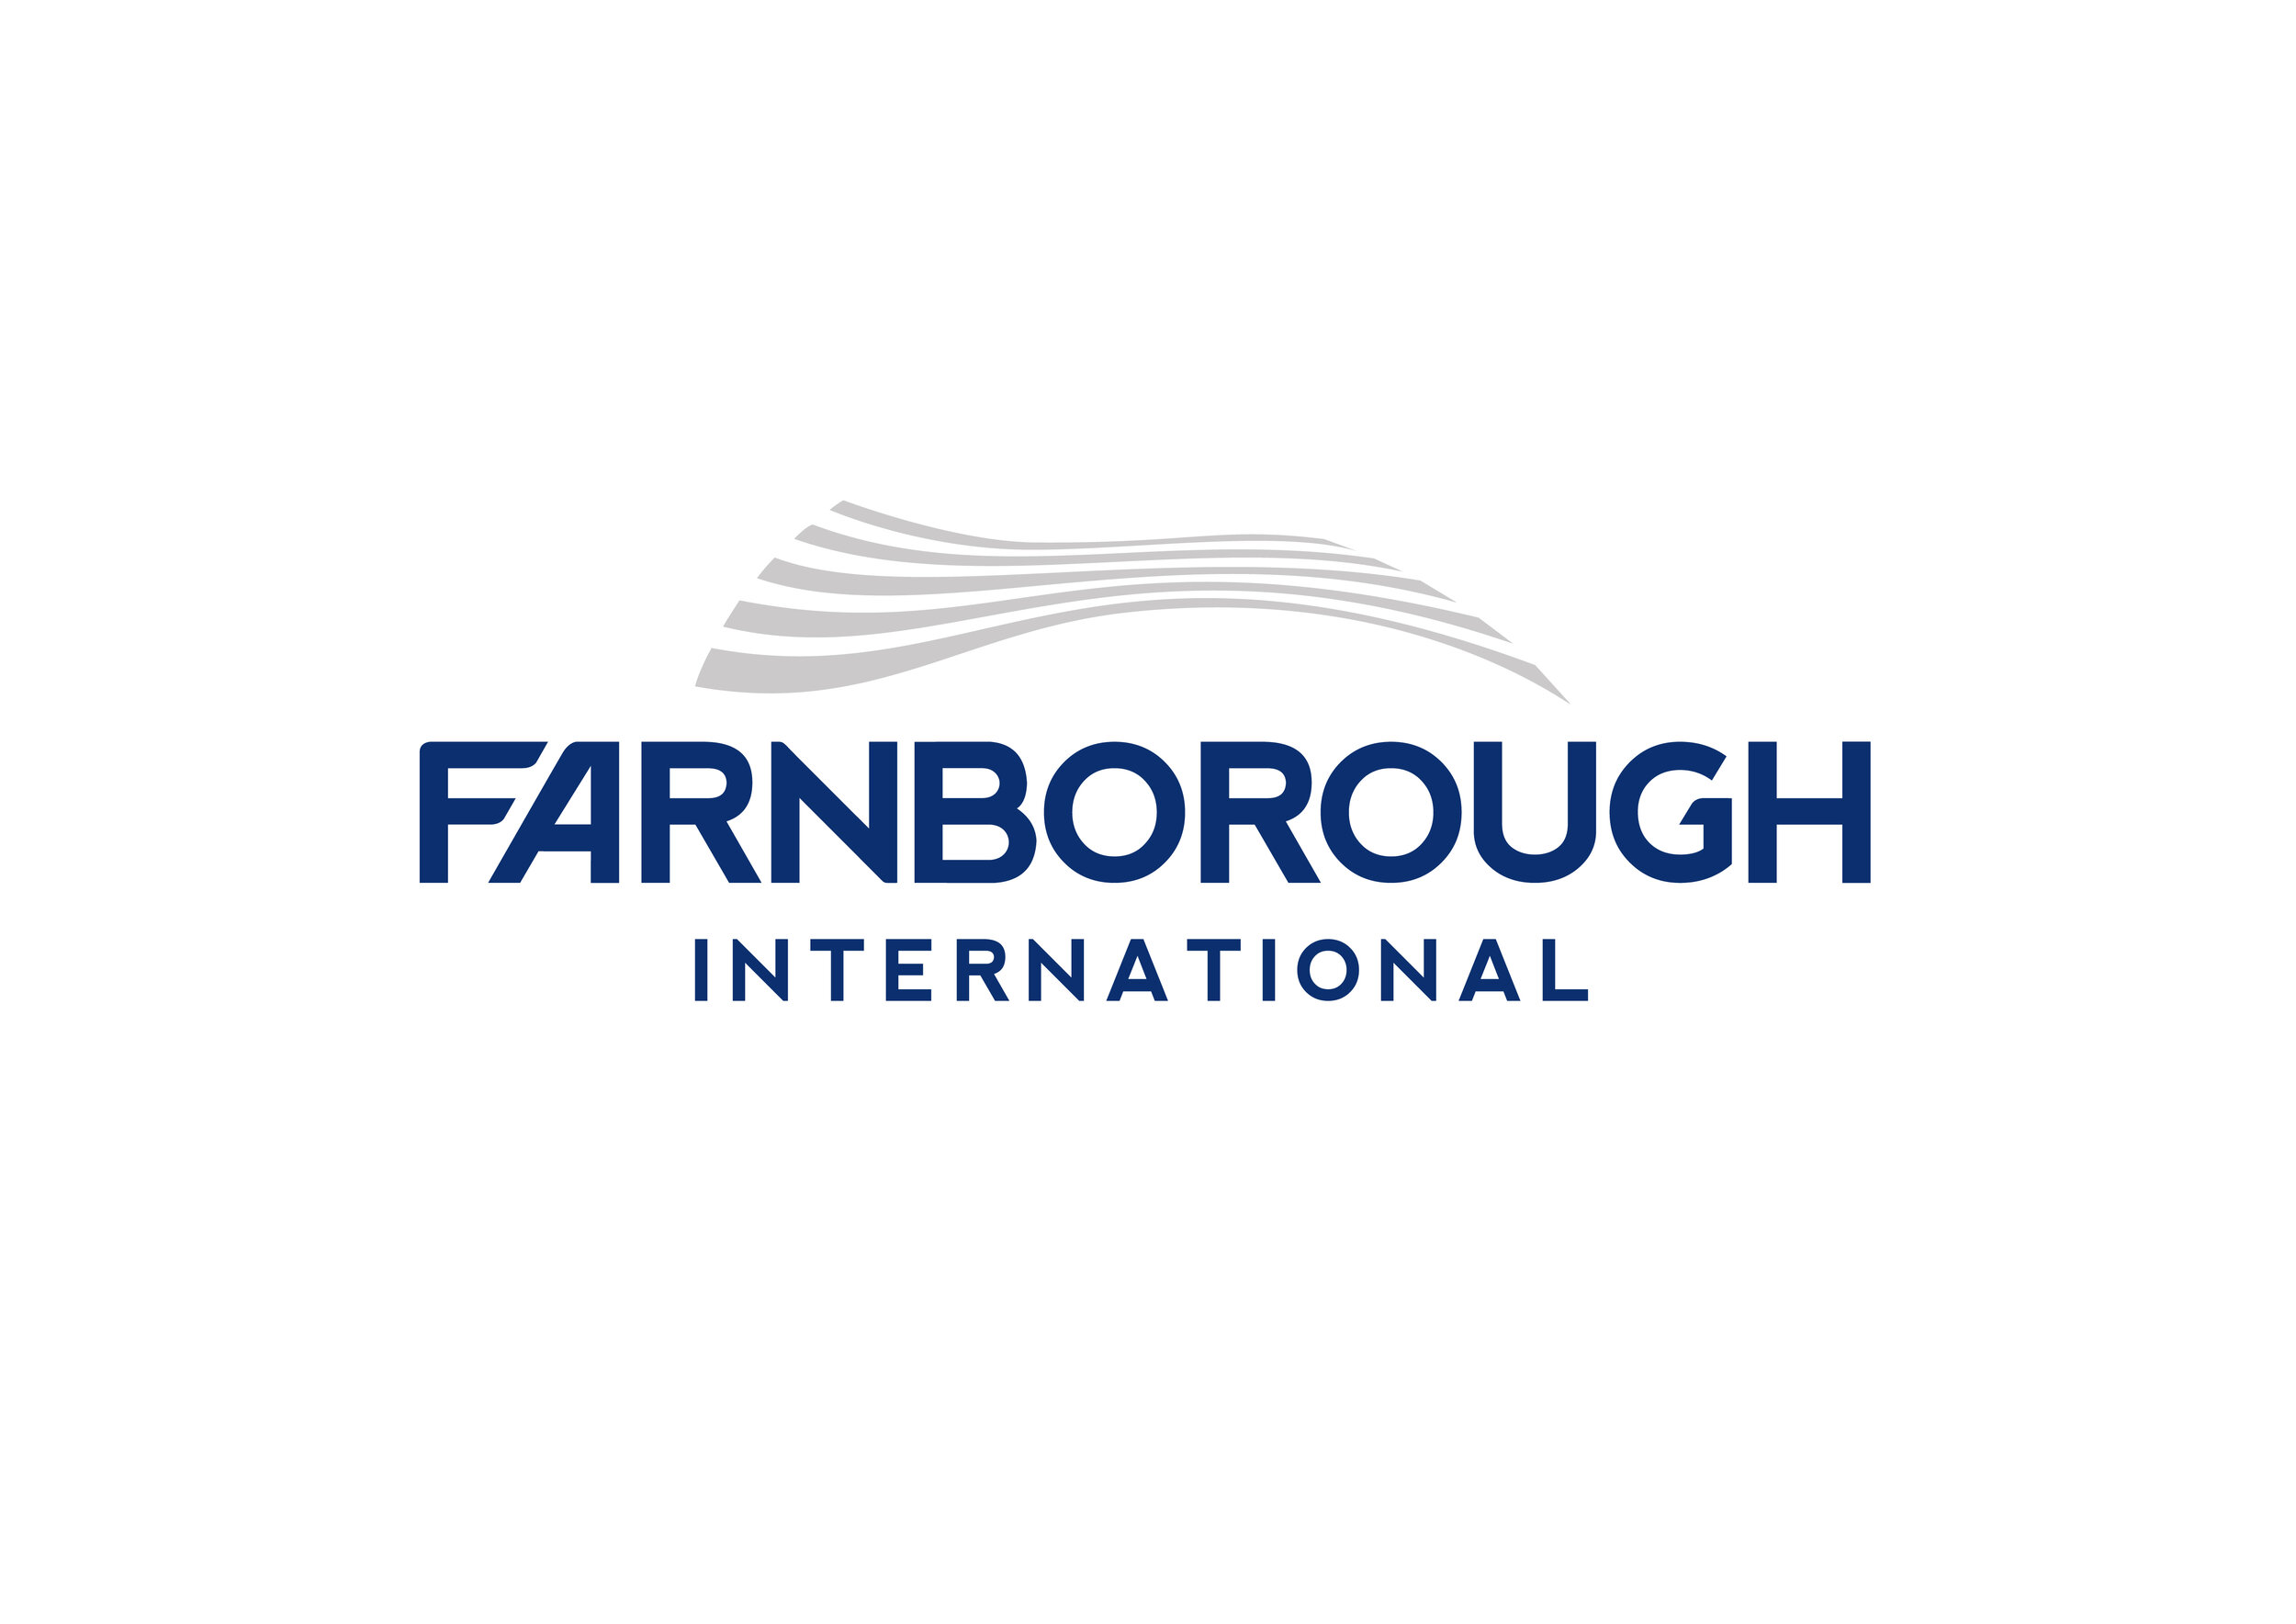 Farnborough international_master logo_White BG-01.jpg